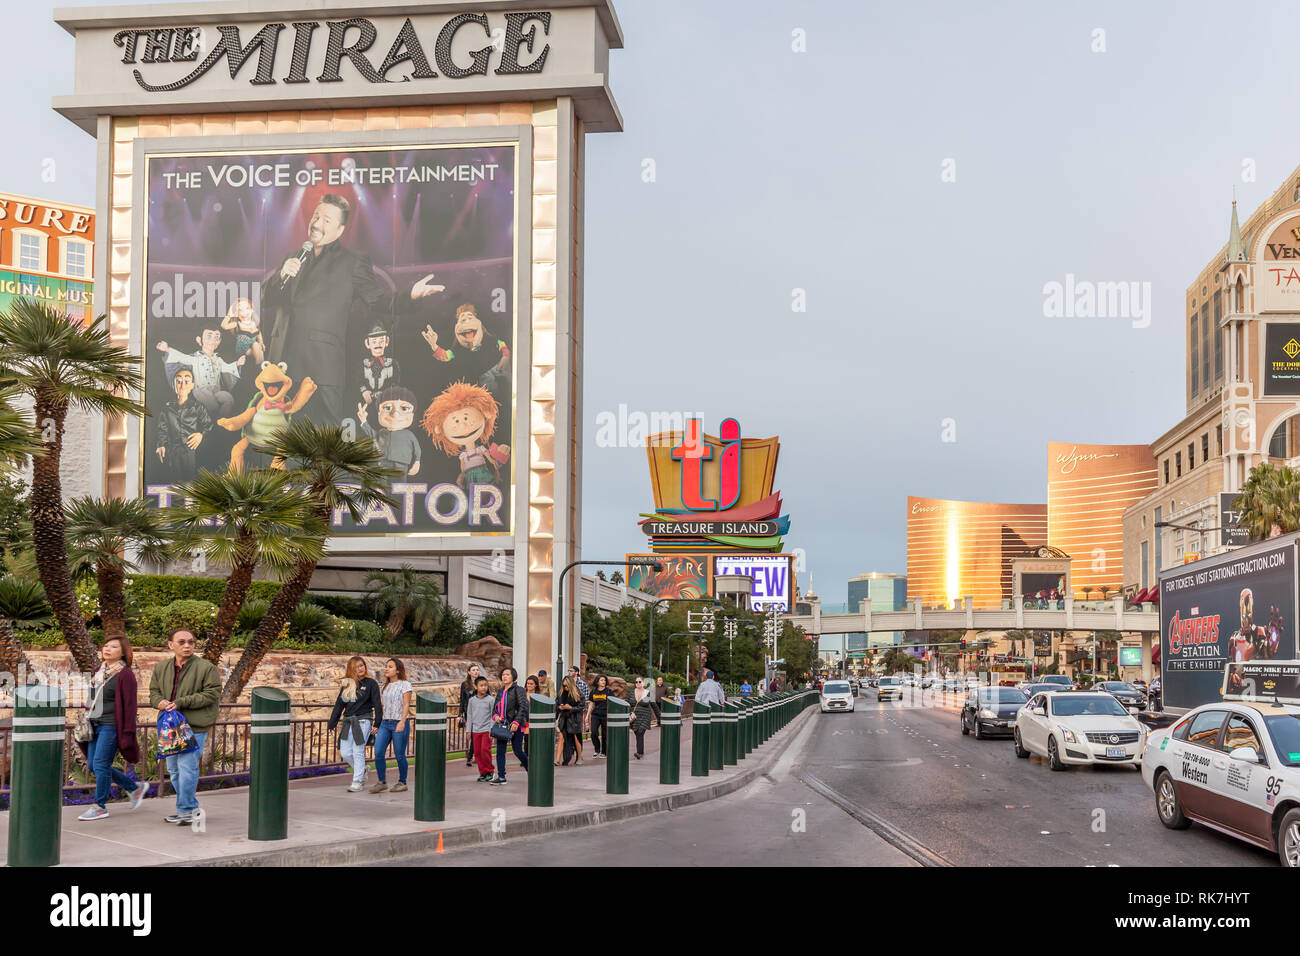 Mirage en plein jour en 2018. Le Mirage est un 3 044 prix de style polynésien resort and casino situé sur le Strip de Las Vegas dans le paradis, Nevada, USA. Banque D'Images